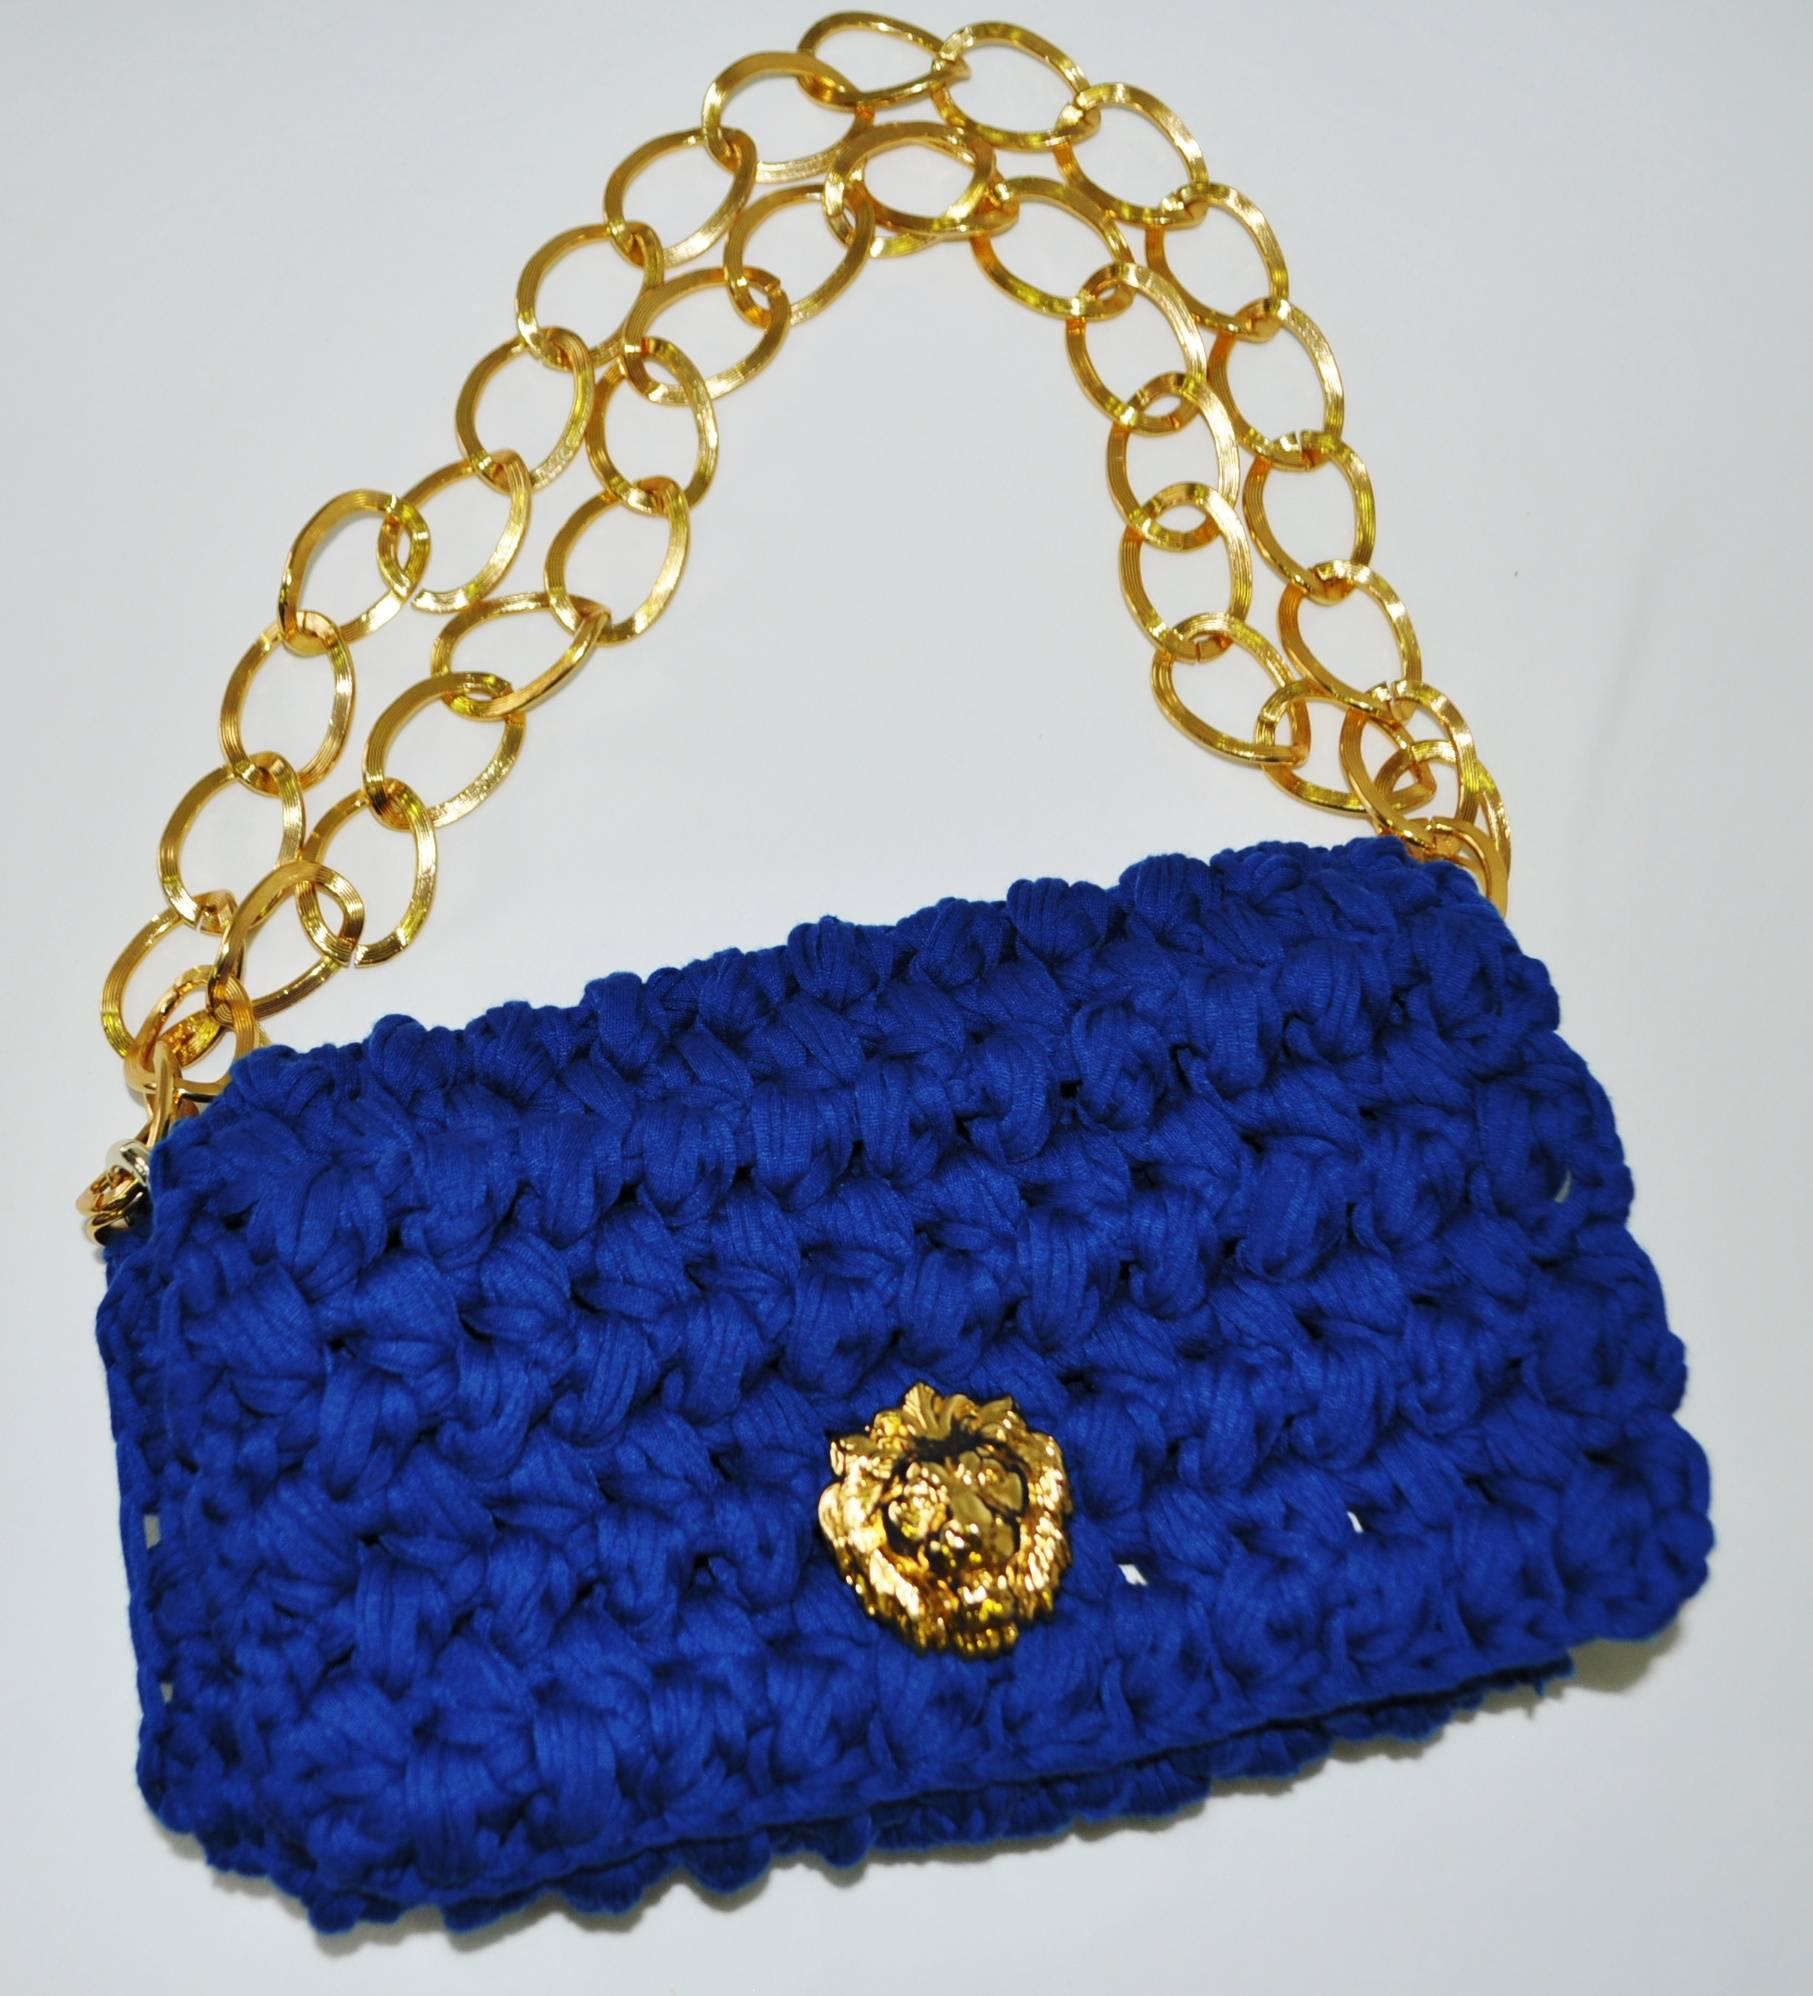 Fresh Fait Maison Original Crocheted Designer Inspired Handbag